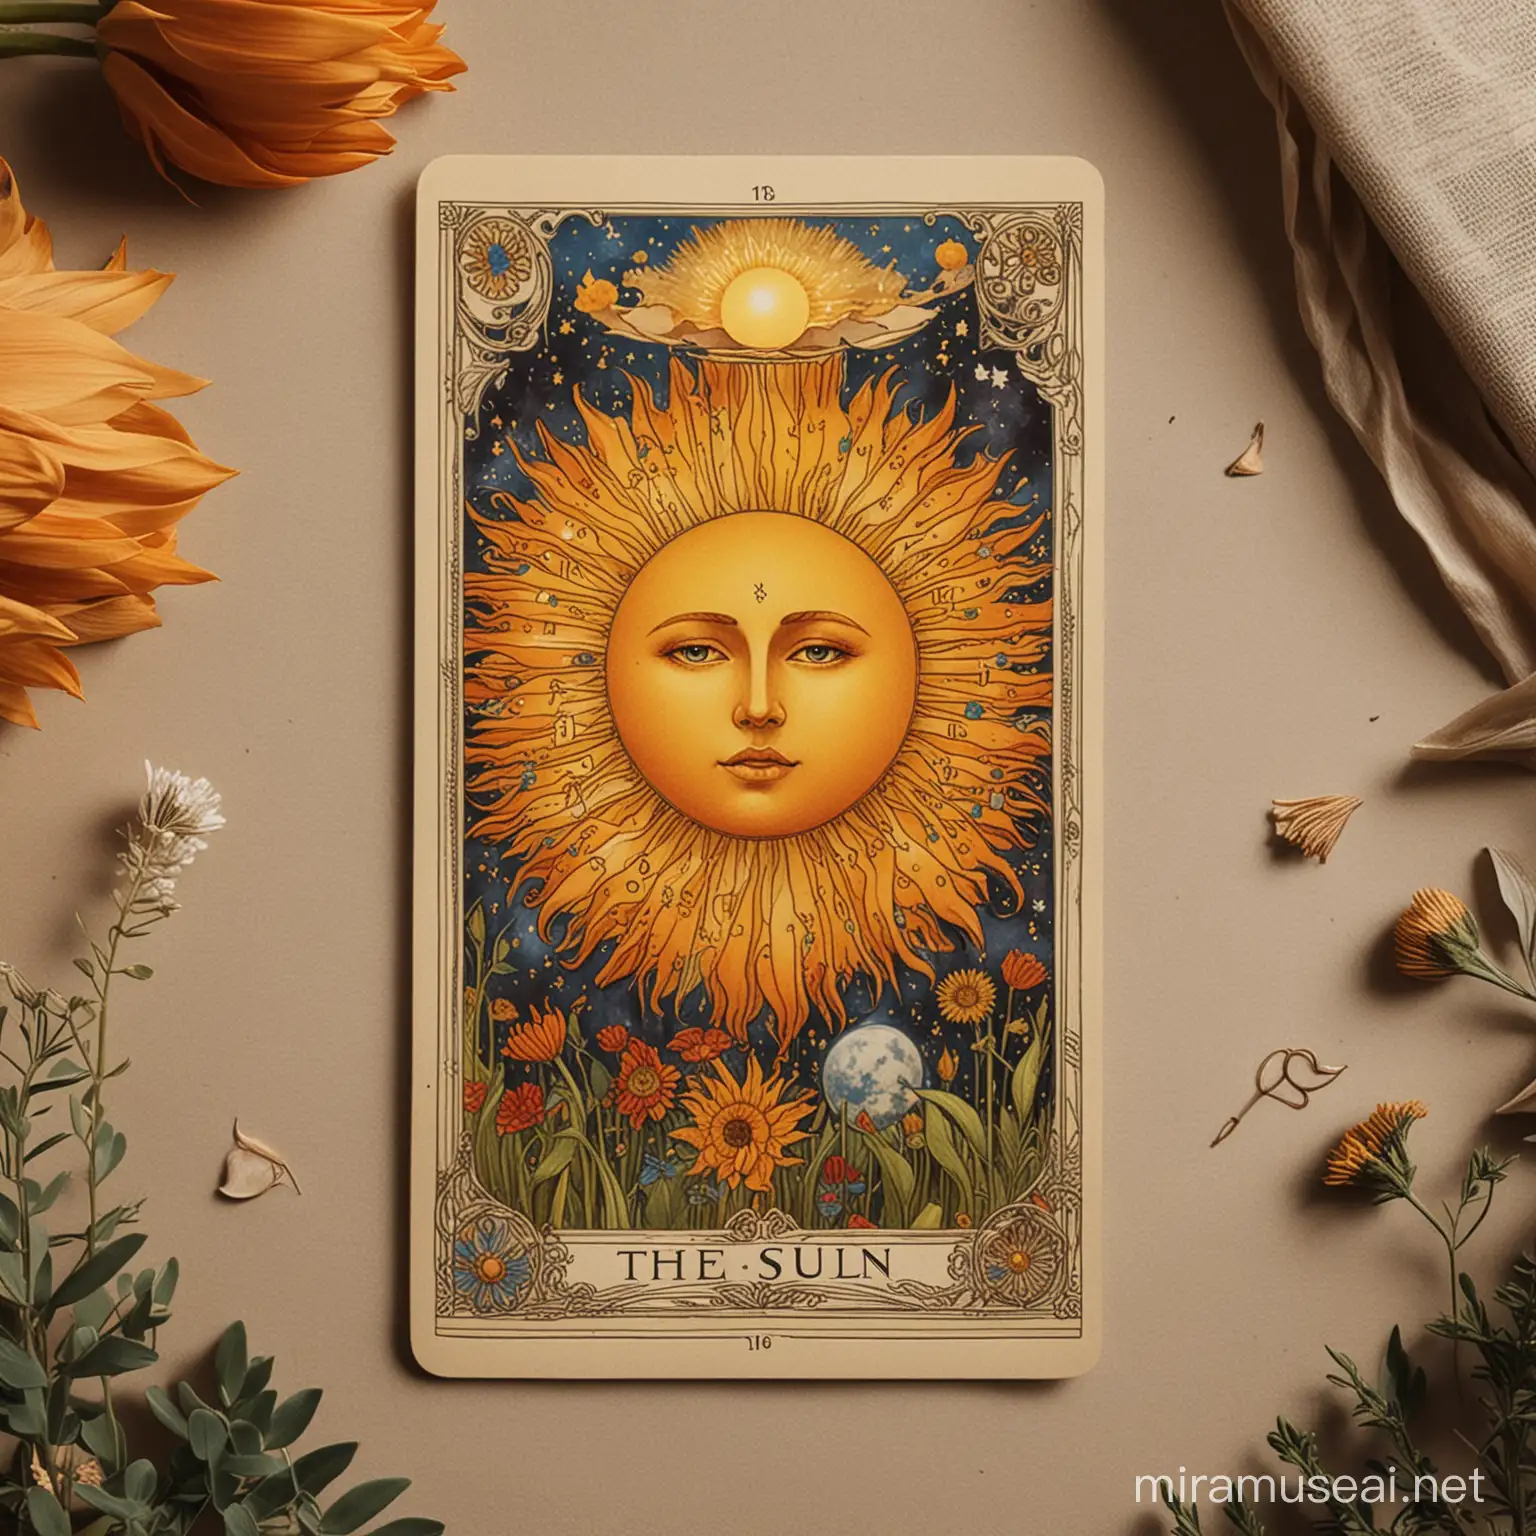 imagen del arcano "el sol" del tarot y números flotando en el ambiente con estilo artistico y mistico. Usando un numero 1 para representar a este arcano.